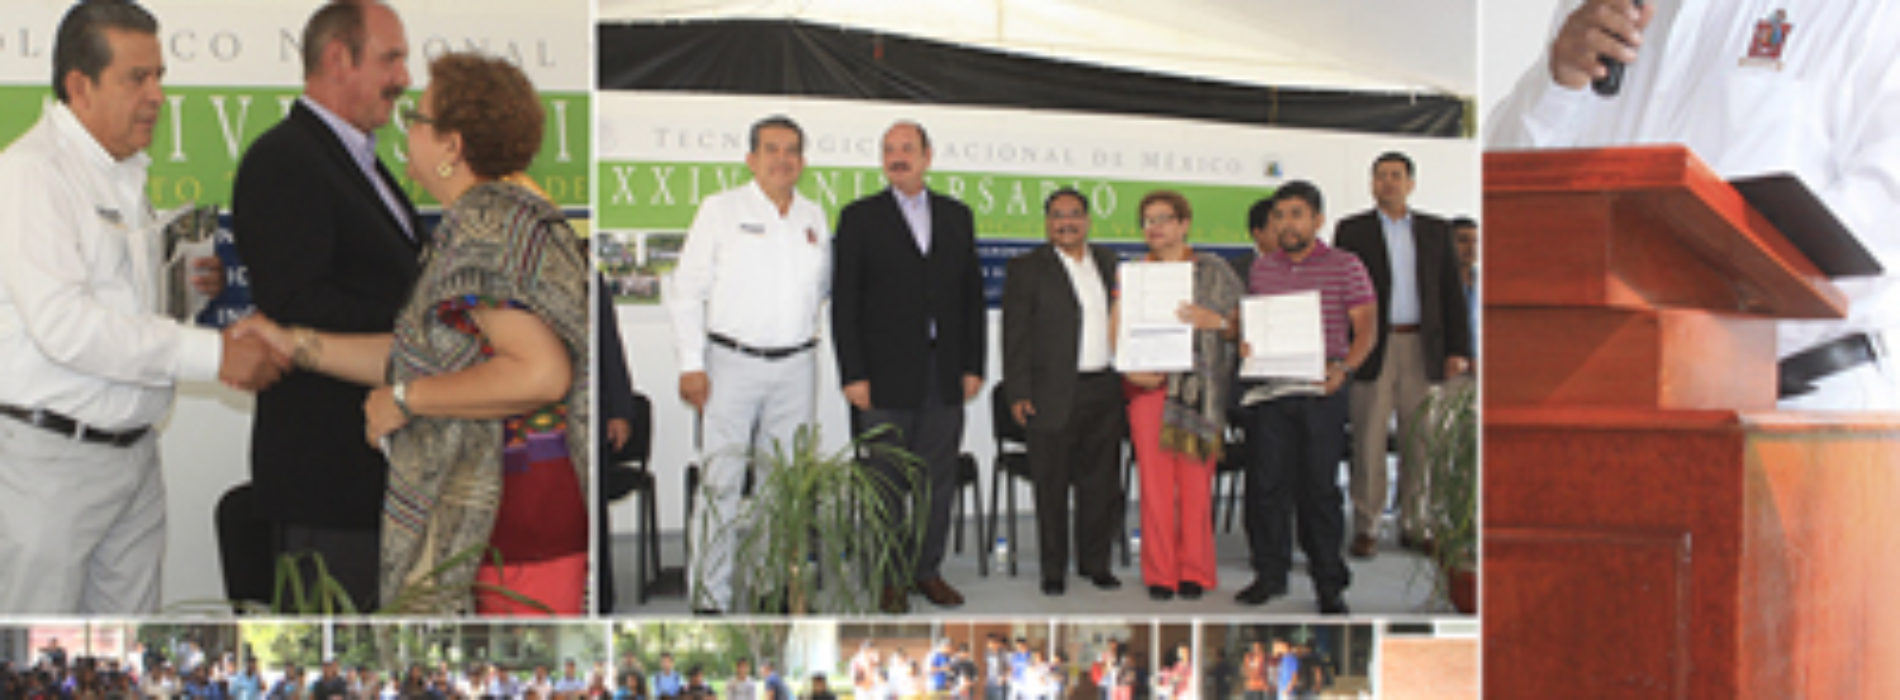 Oaxaca dio un gran paso con la recuperación de la rectoría educativa: SEDAPA